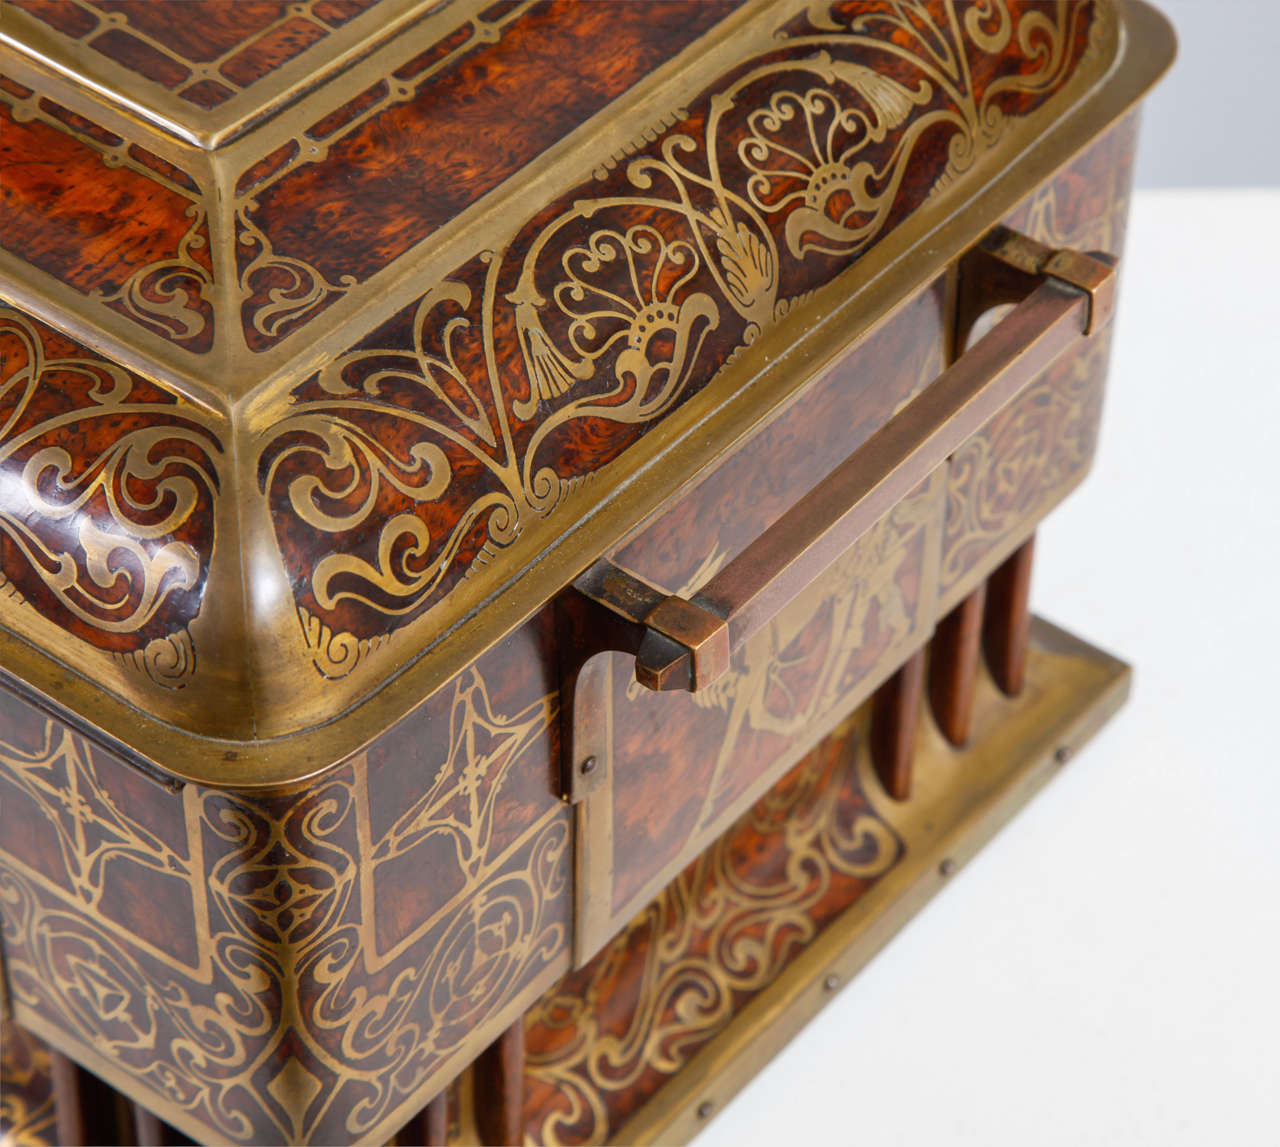 20th Century Art Nouveau Table Casket by Erhard & Söhne For Sale